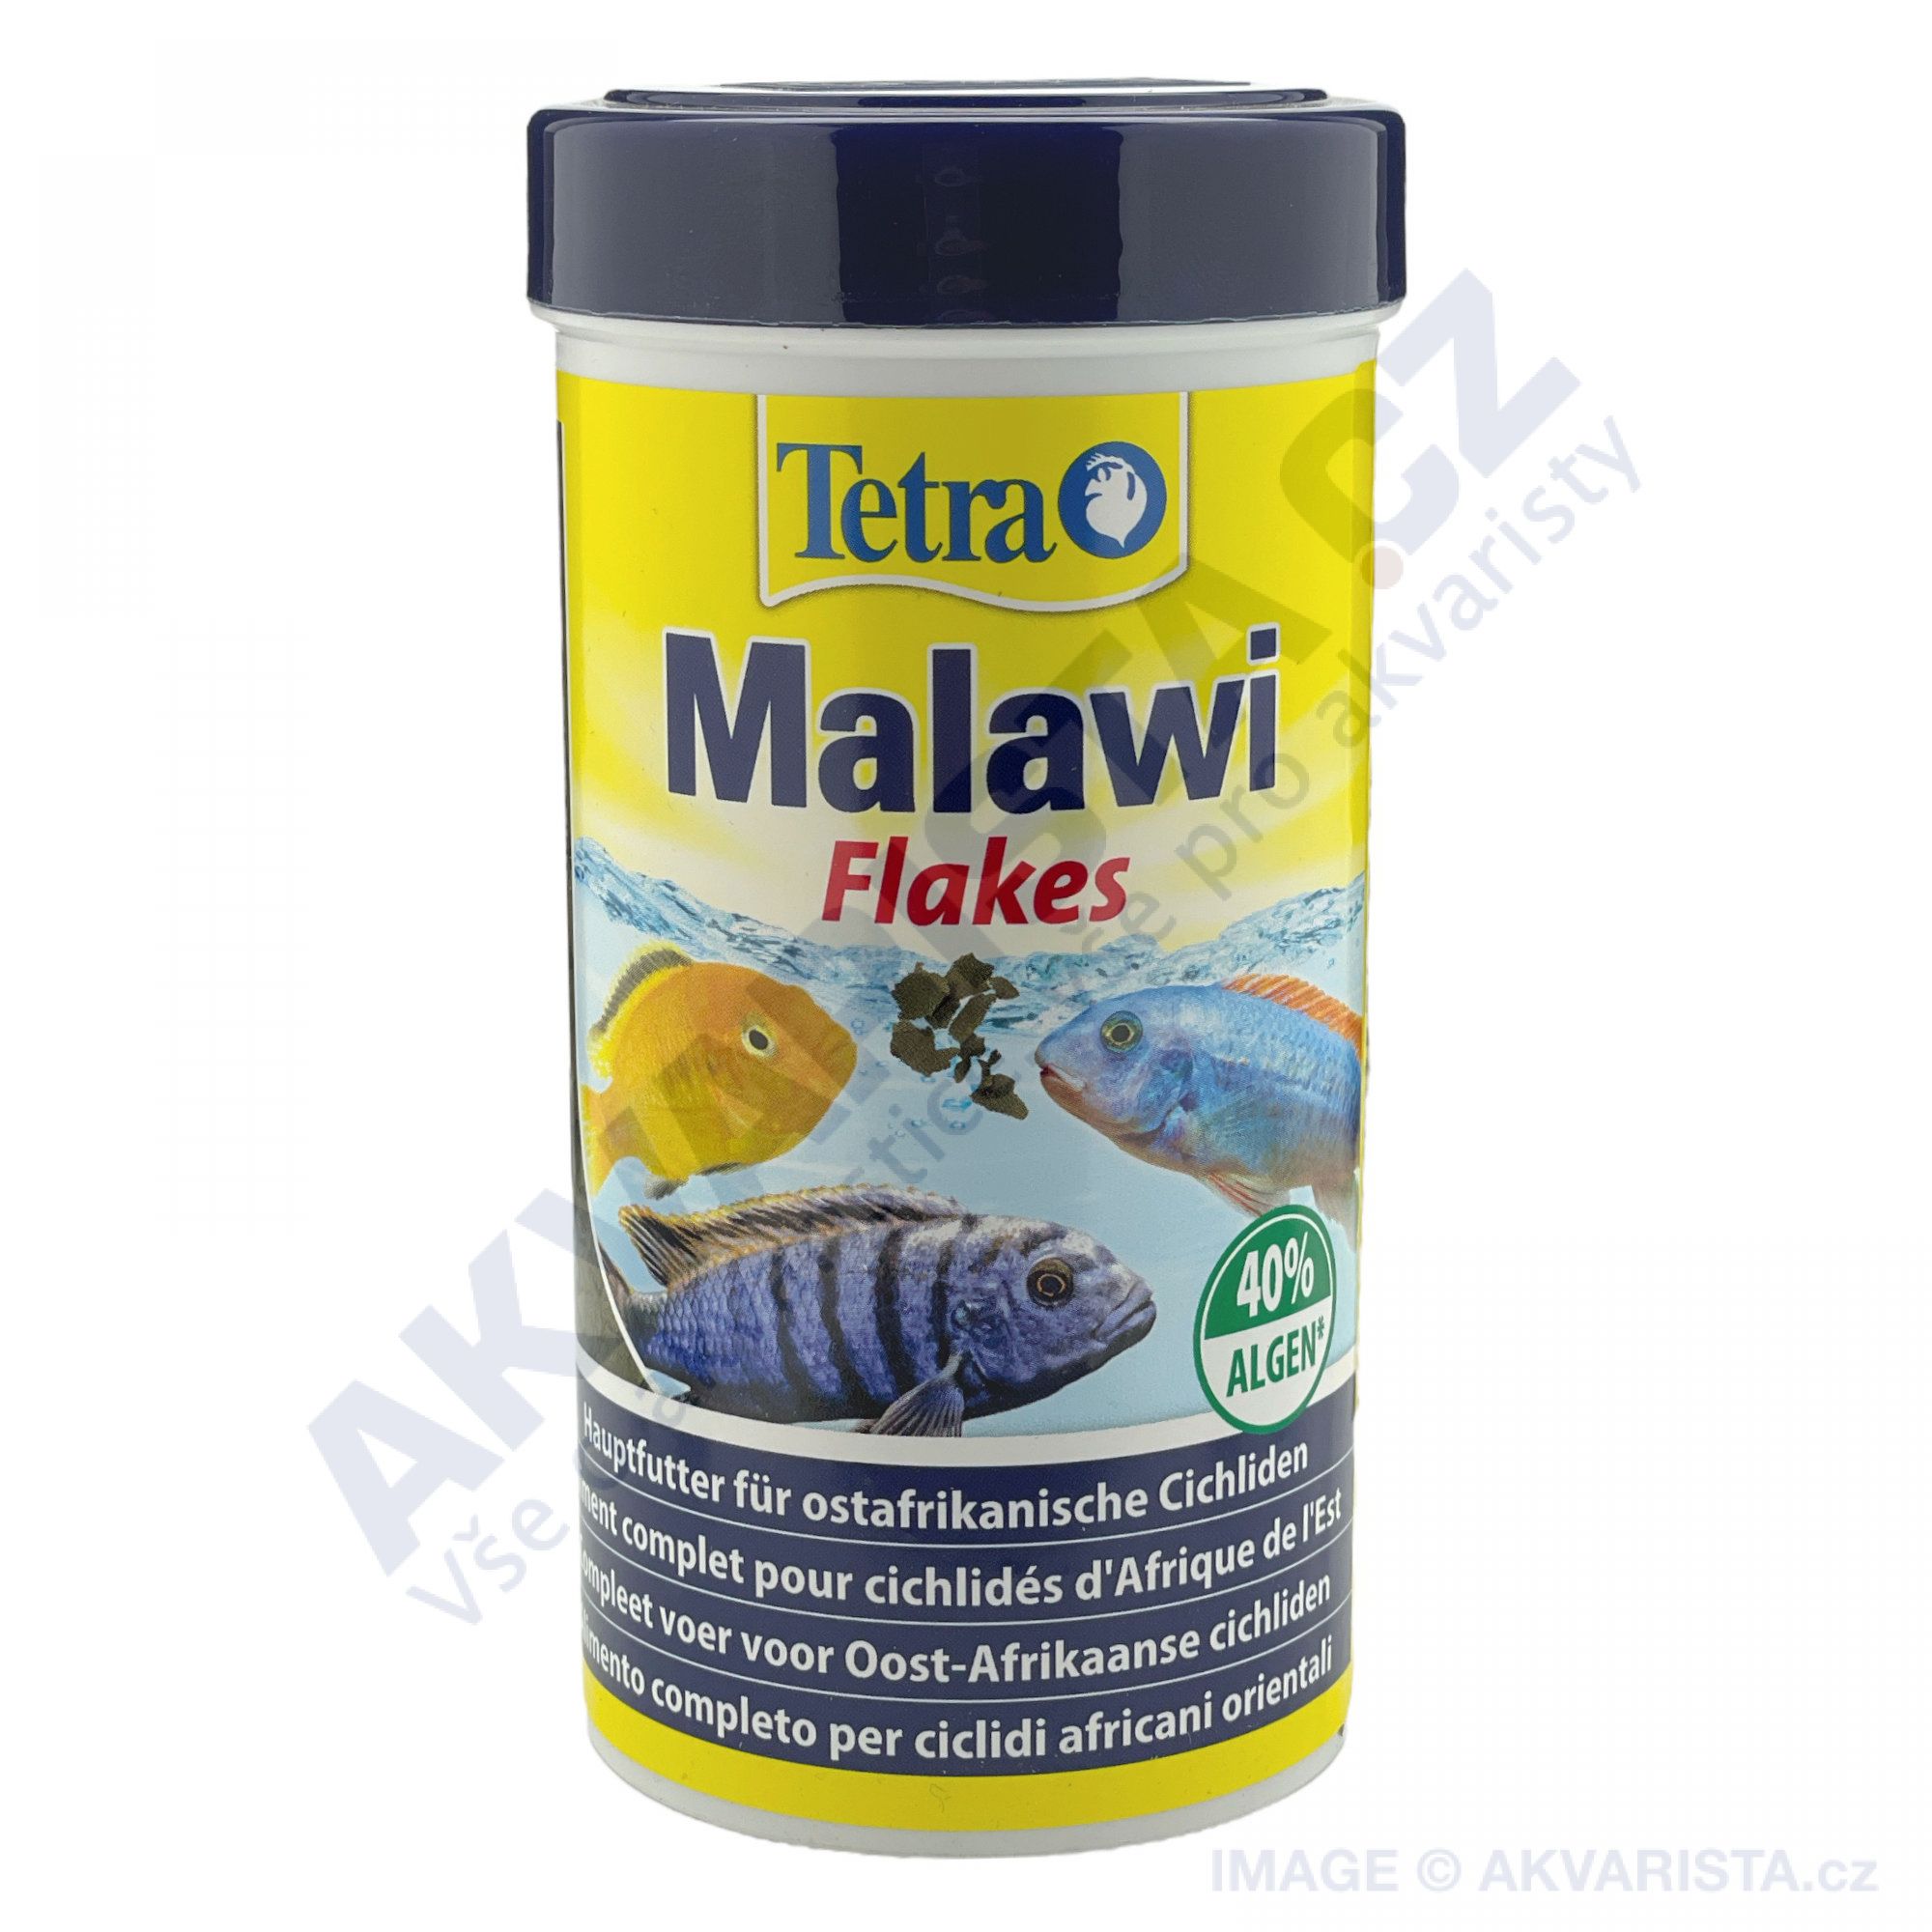 Tetra Malawi fakes 250 ml